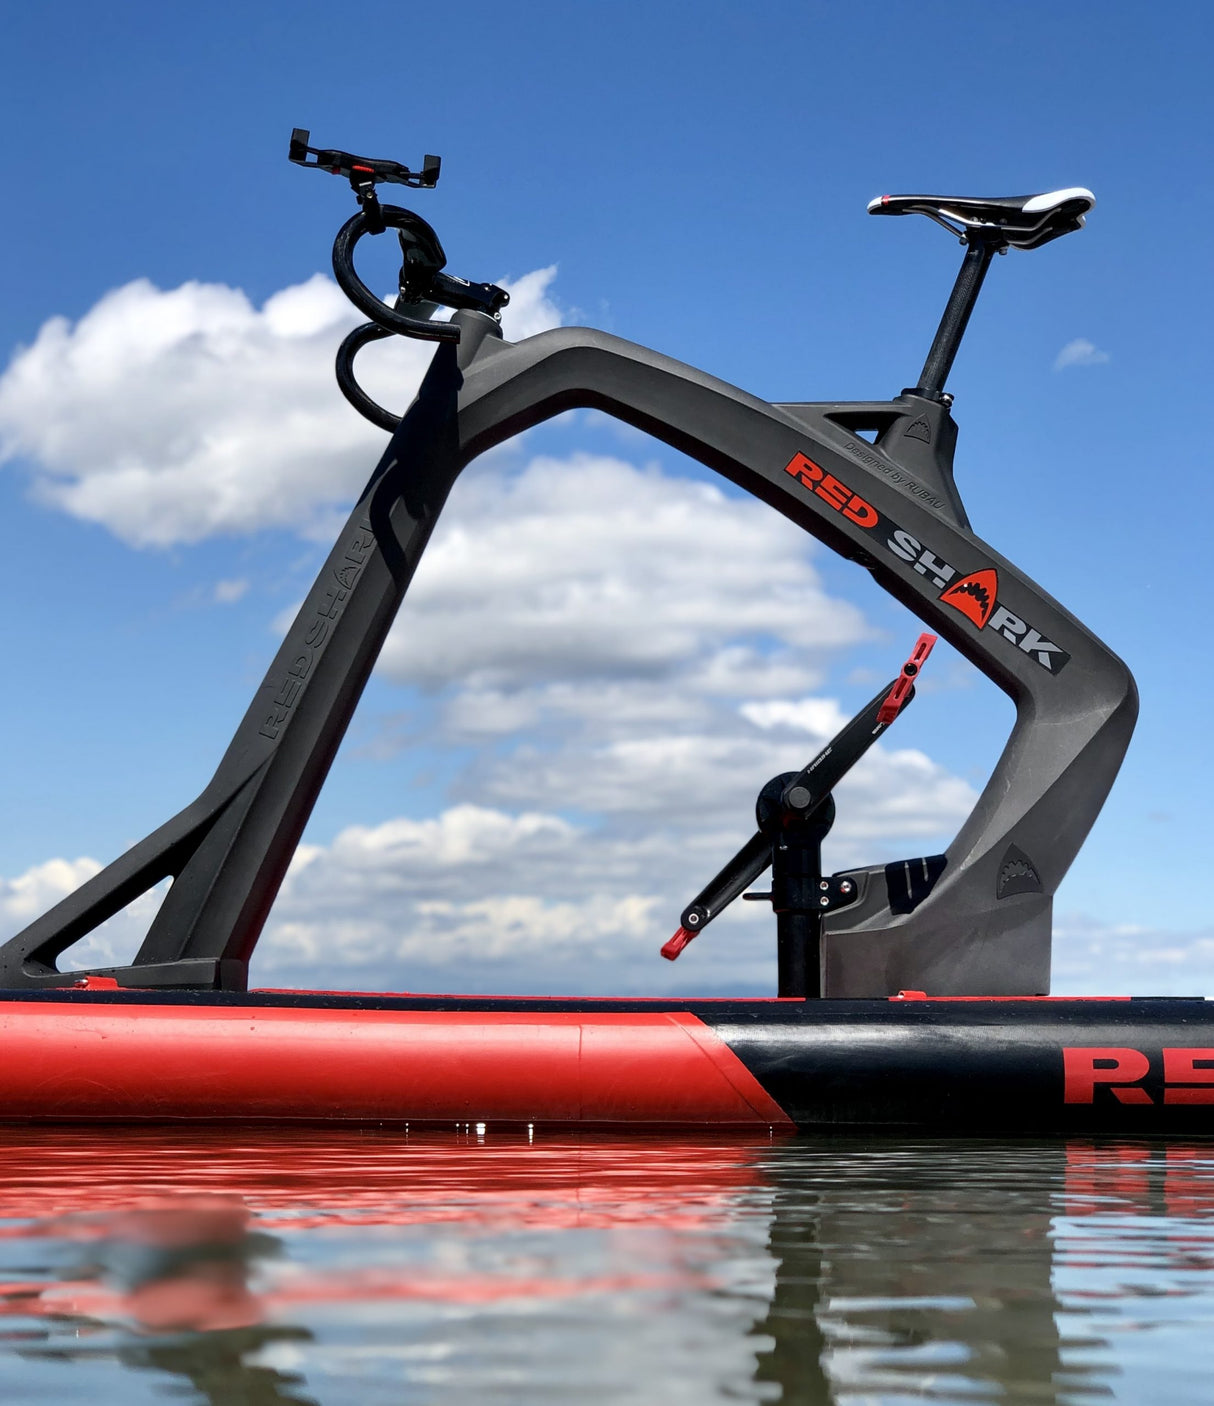 Red Shark Fitness waterbike